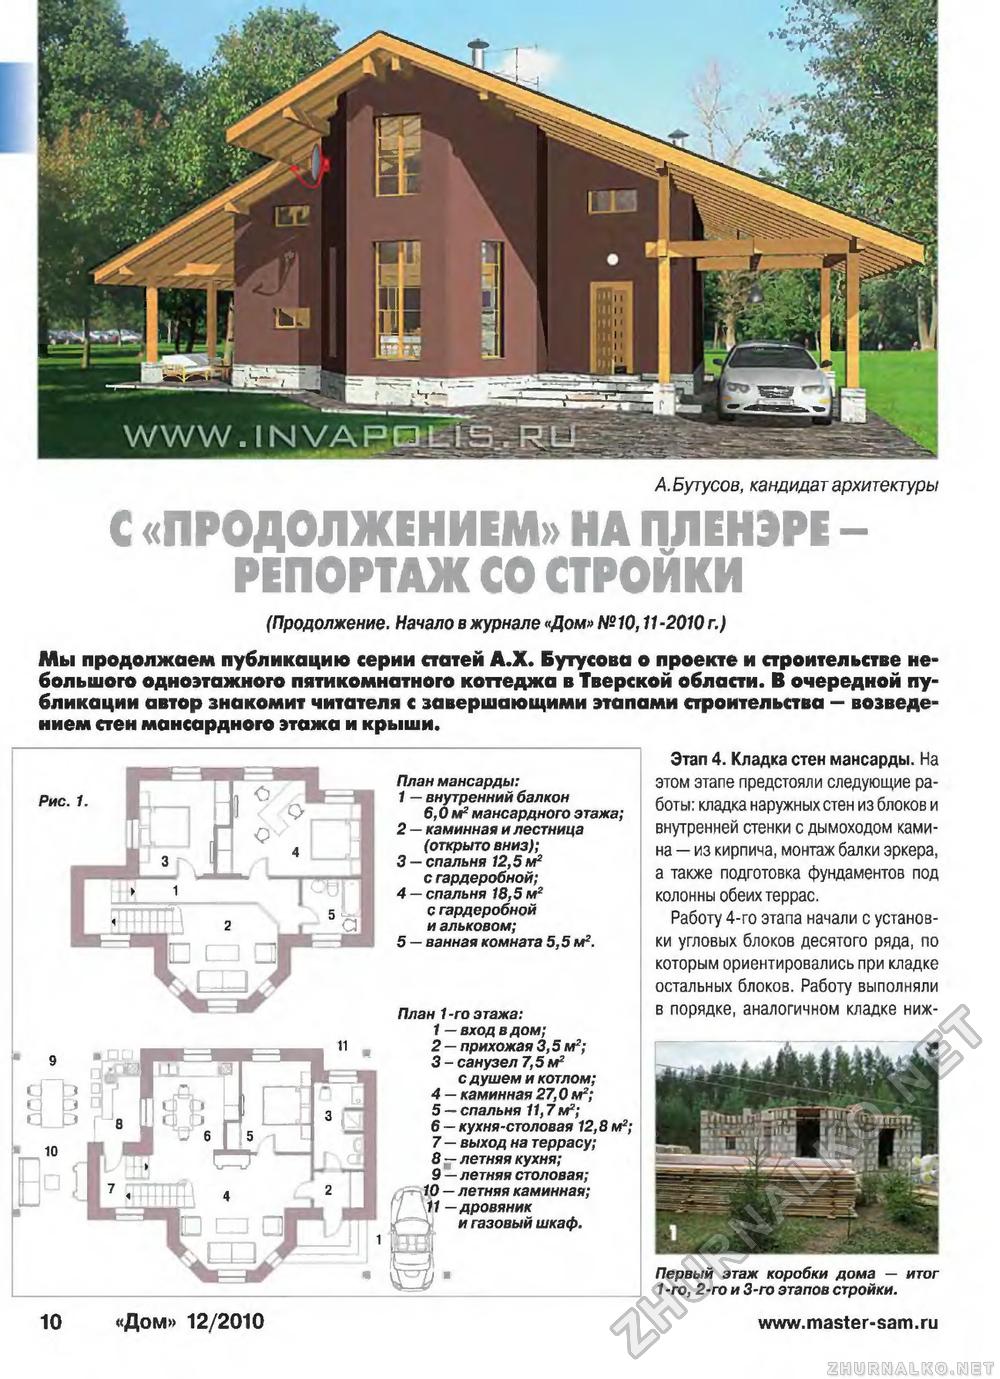 Дом 2010-12, страница 10